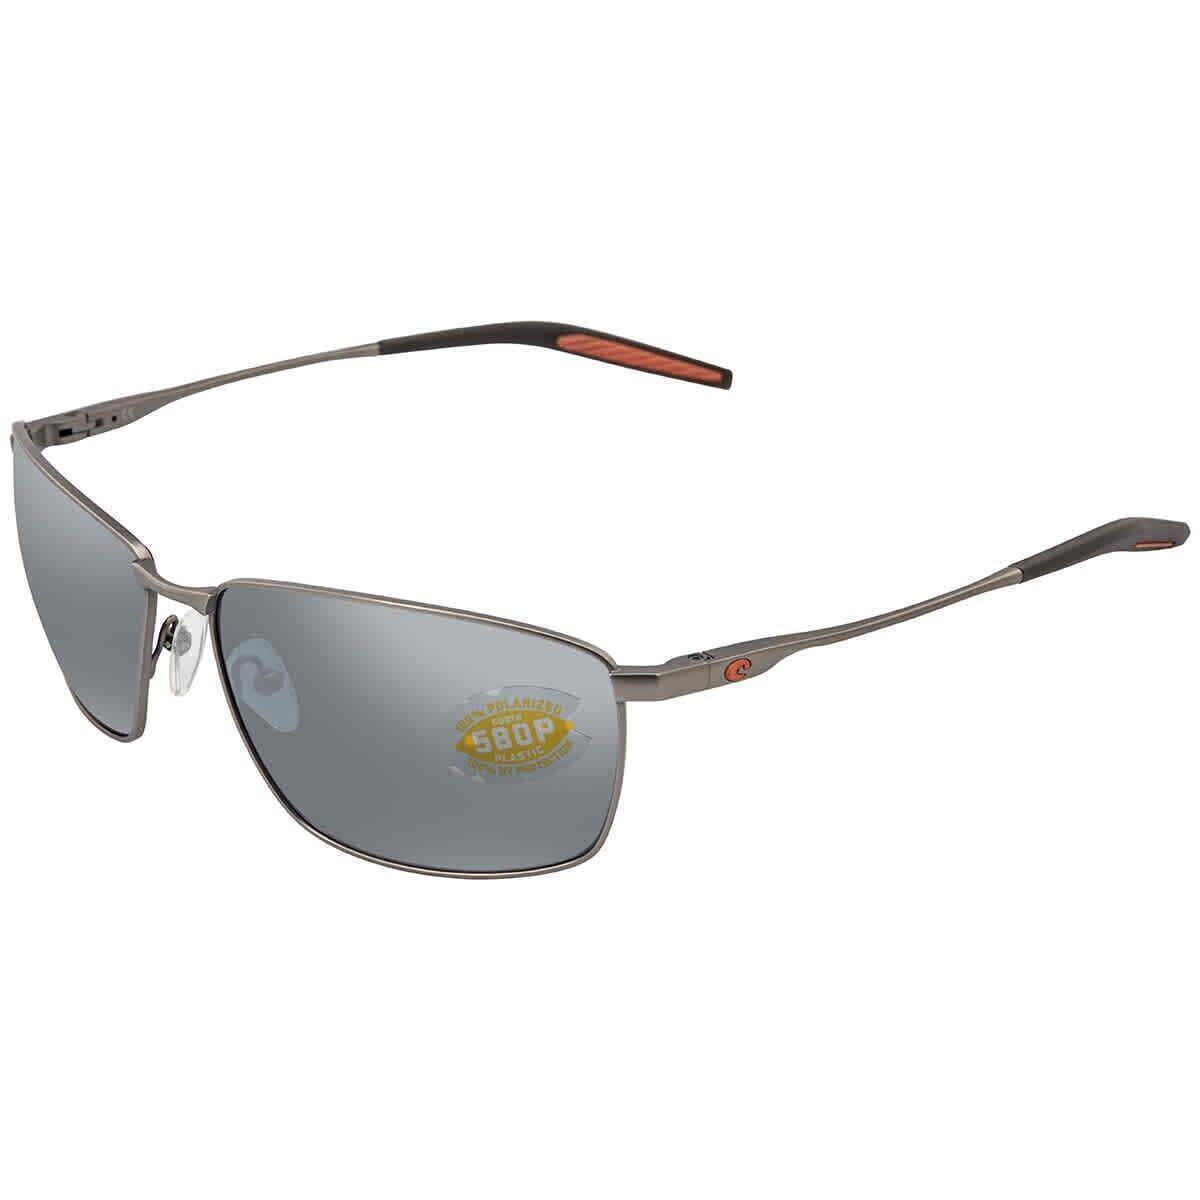 Costa Del Mar Trt 228 Osgp Turret Sunglasses Matte Silver Mirror 580P Polarized